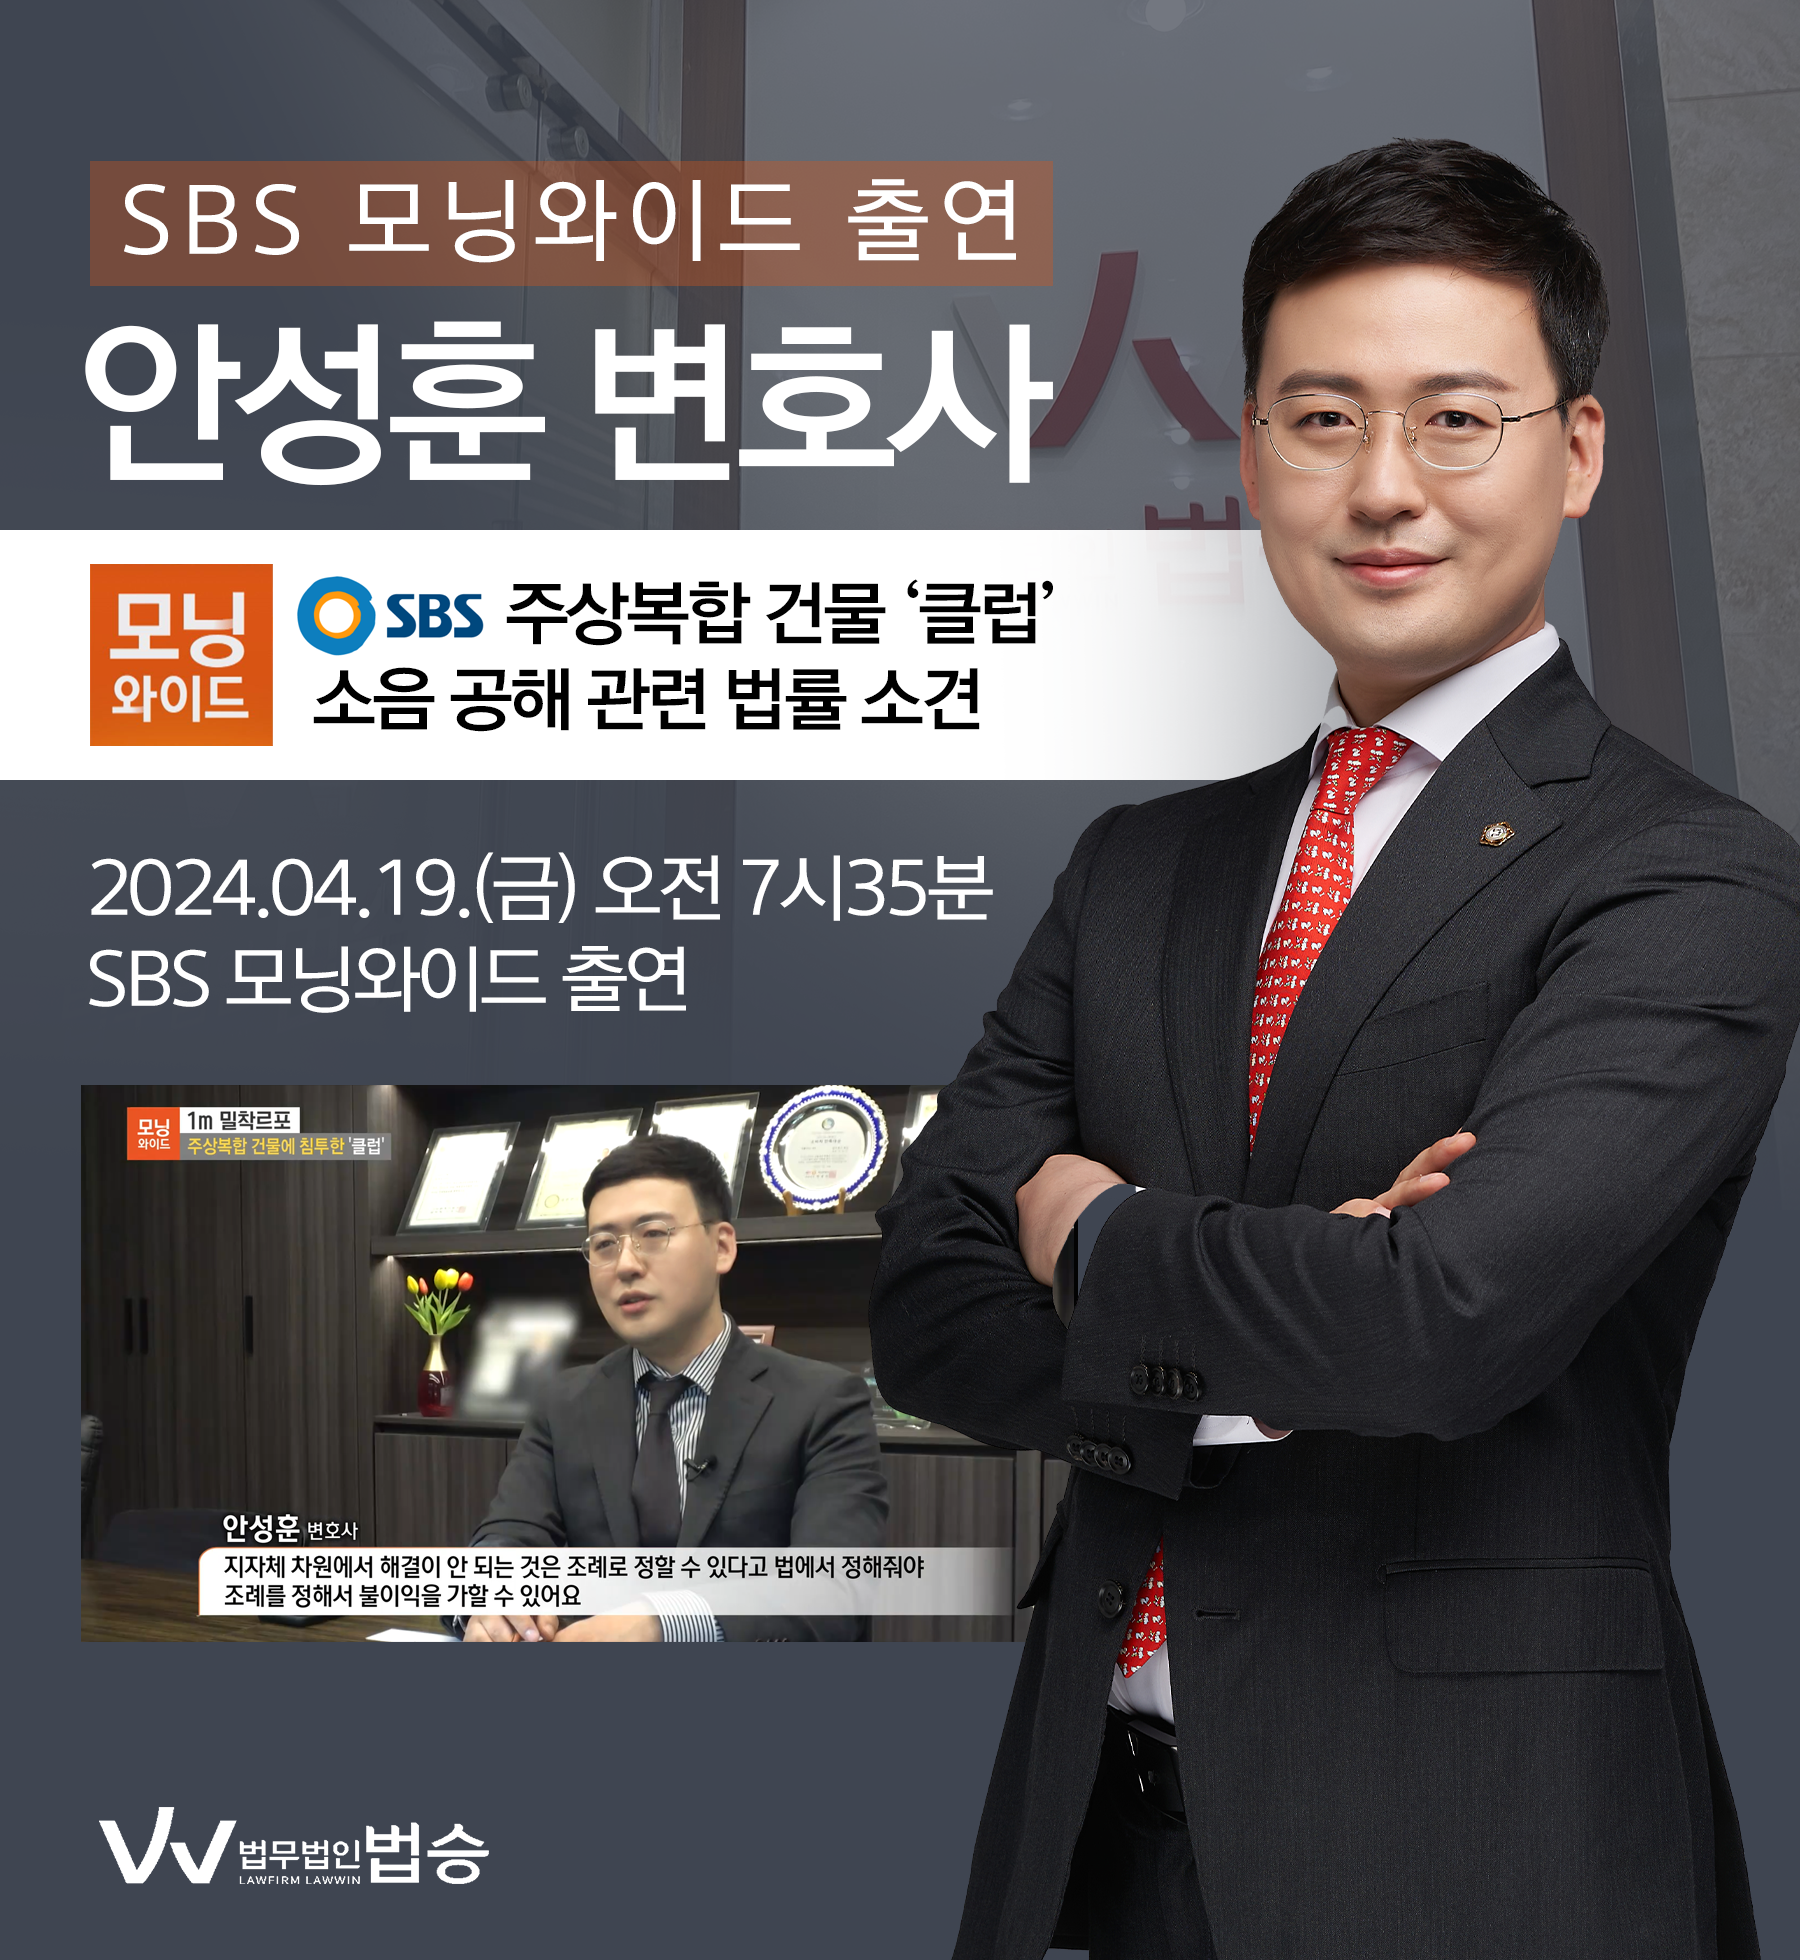 [법승소식] 안성훈 변호사 SBS 모닝와이드 [1m 밀착르포] 방송 출연ㅣ주상복합 건물에 침투한 '클럽' 이미지